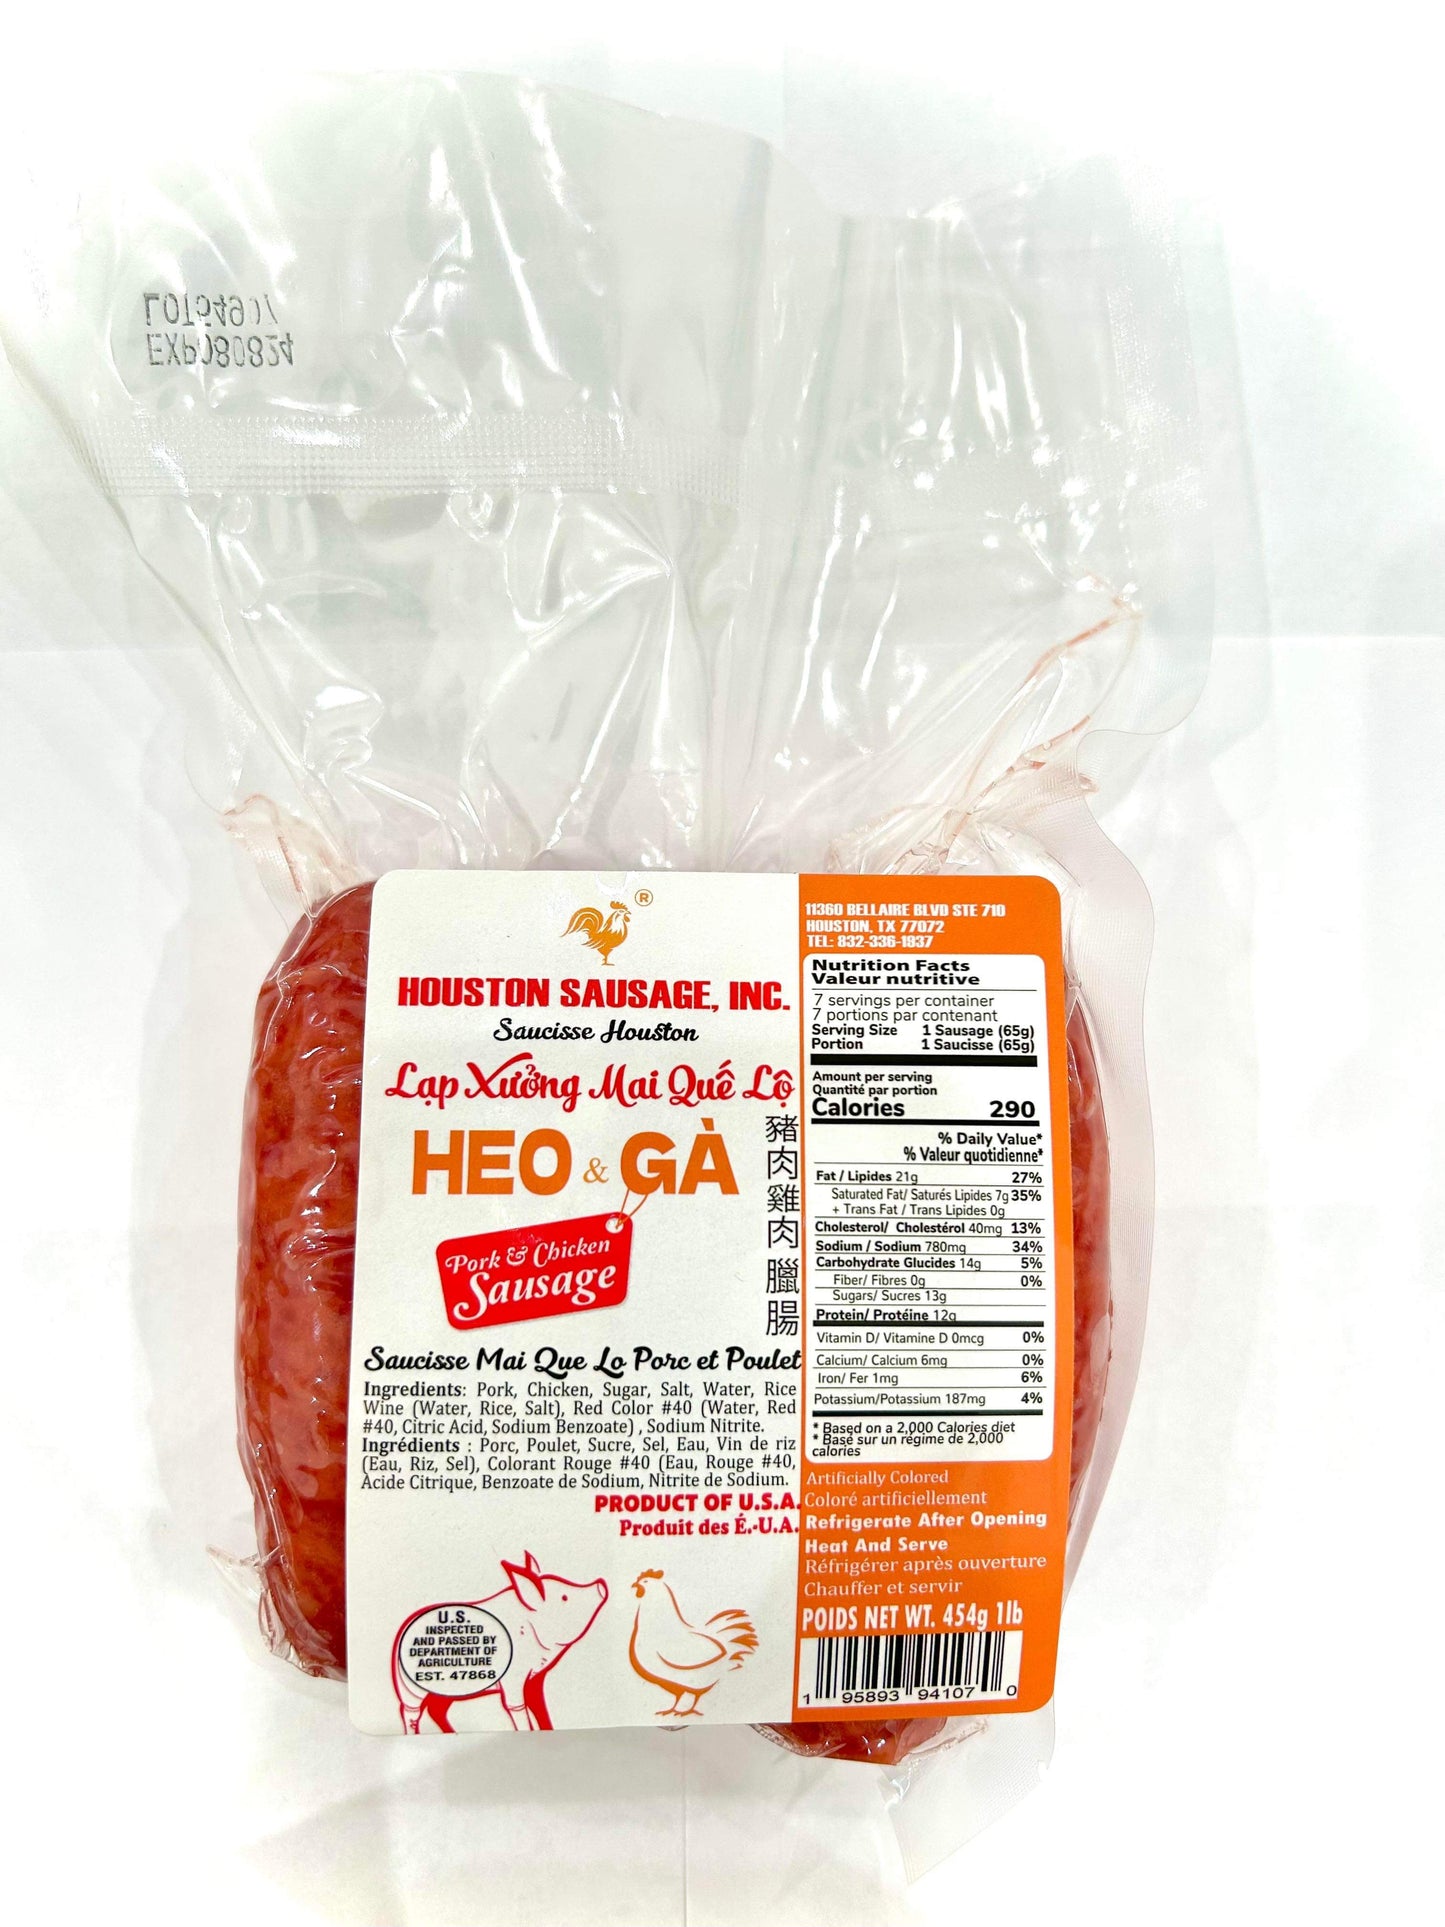 Lạp Xưởng Mai Quế Lộ Heo & Gà 16oz | Houston Pork & Chicken Sausage